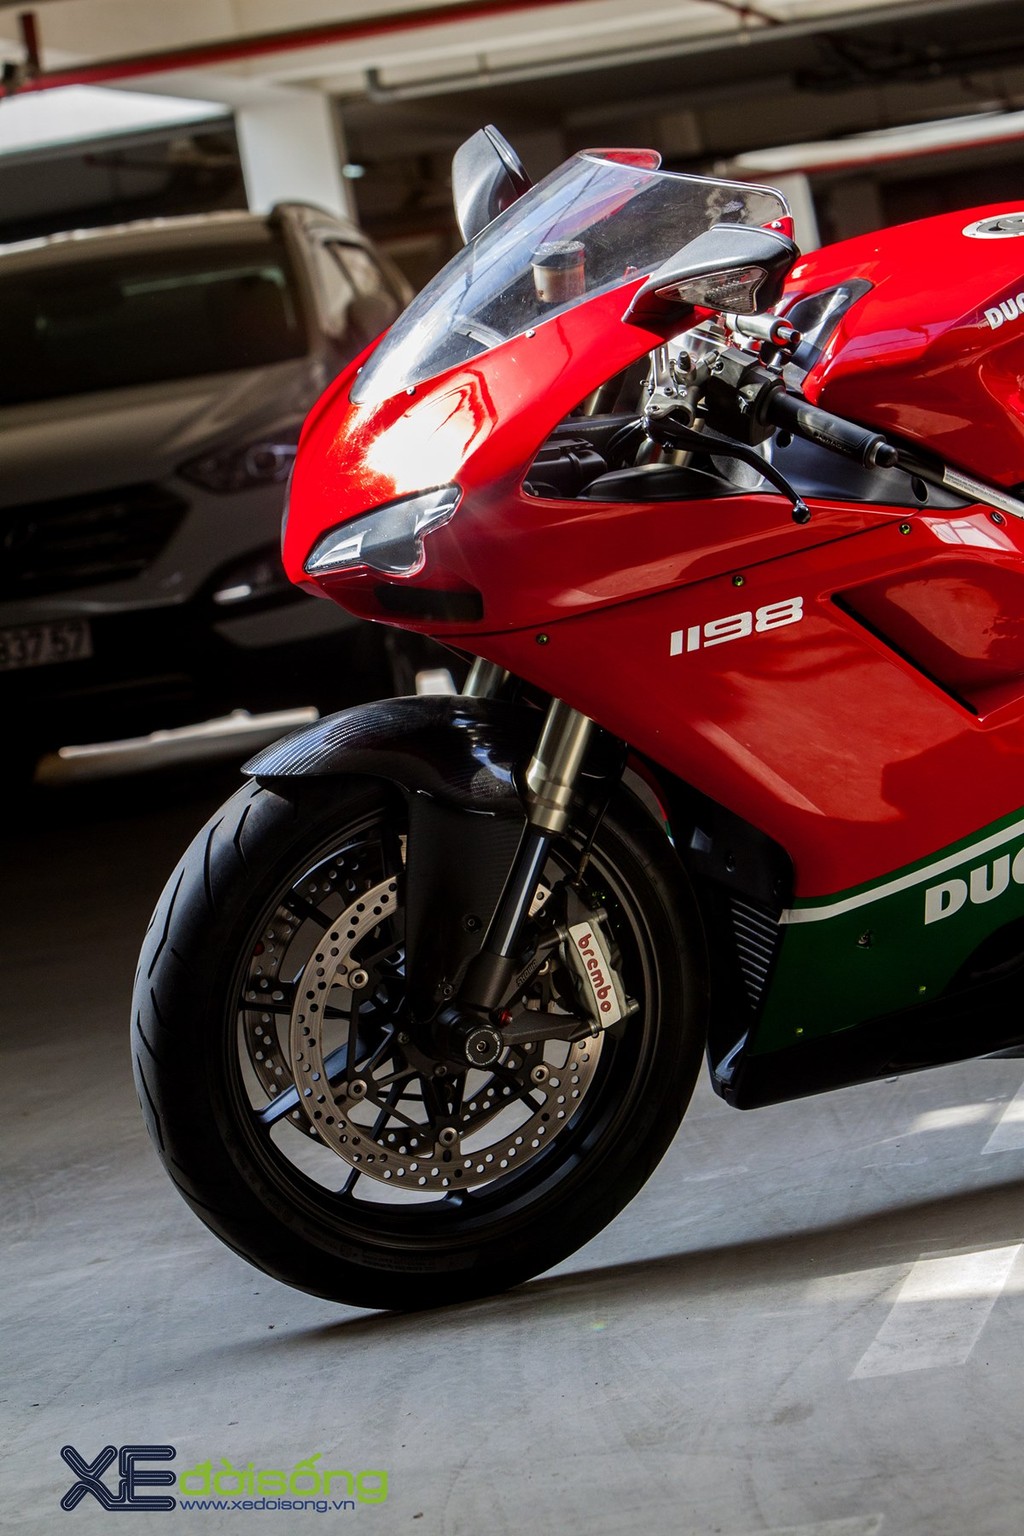 Ngắm Ducati 1198, huyền thoại trong làng Super Bike xi-lanh đôi ảnh 16